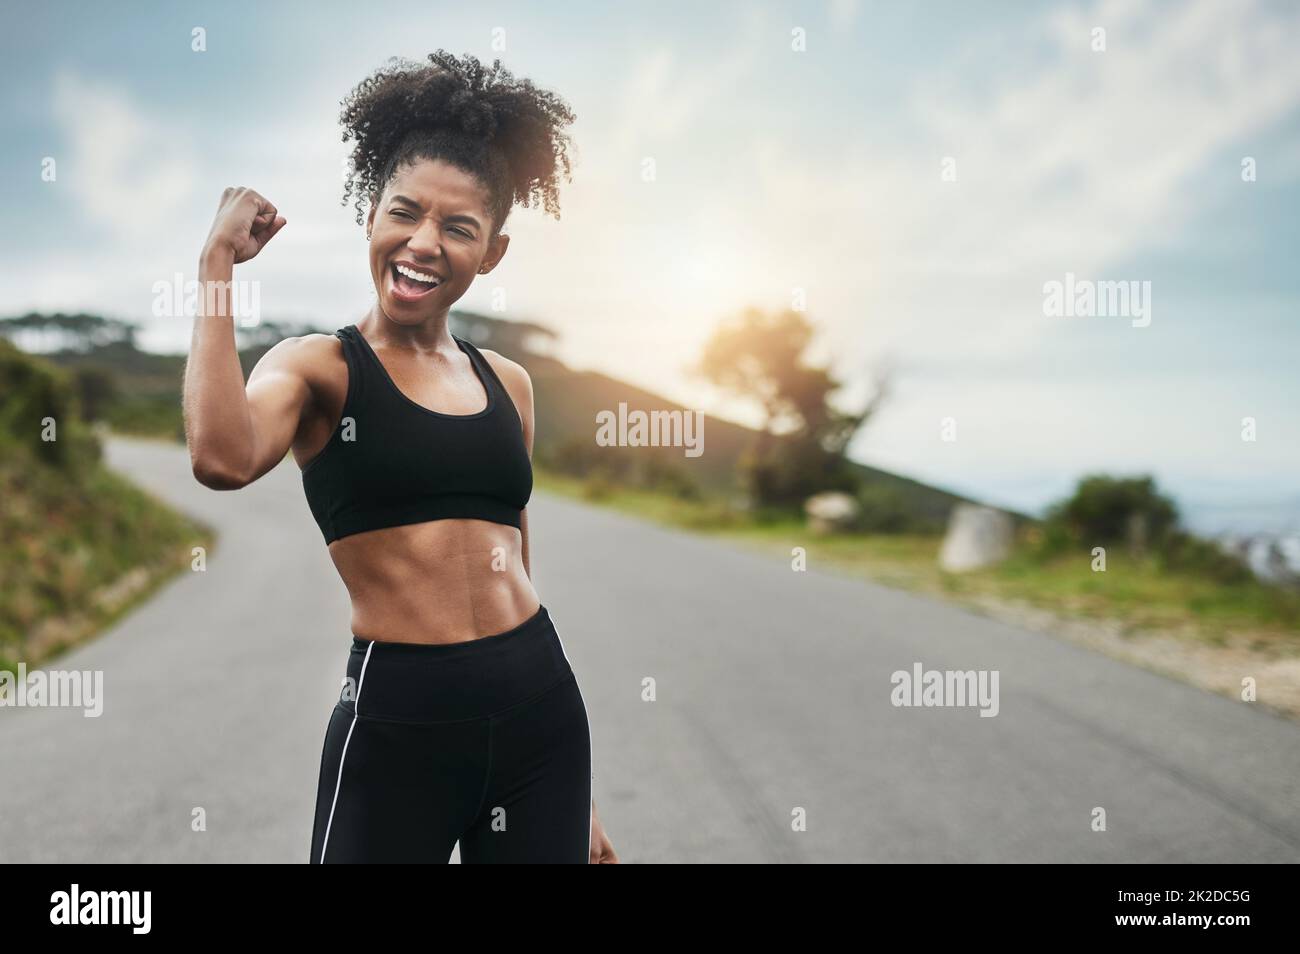 La force vient de l'intérieur. Photo courte d'une jeune sportswoman attirante en flexion de son biceps à l'extérieur. Banque D'Images